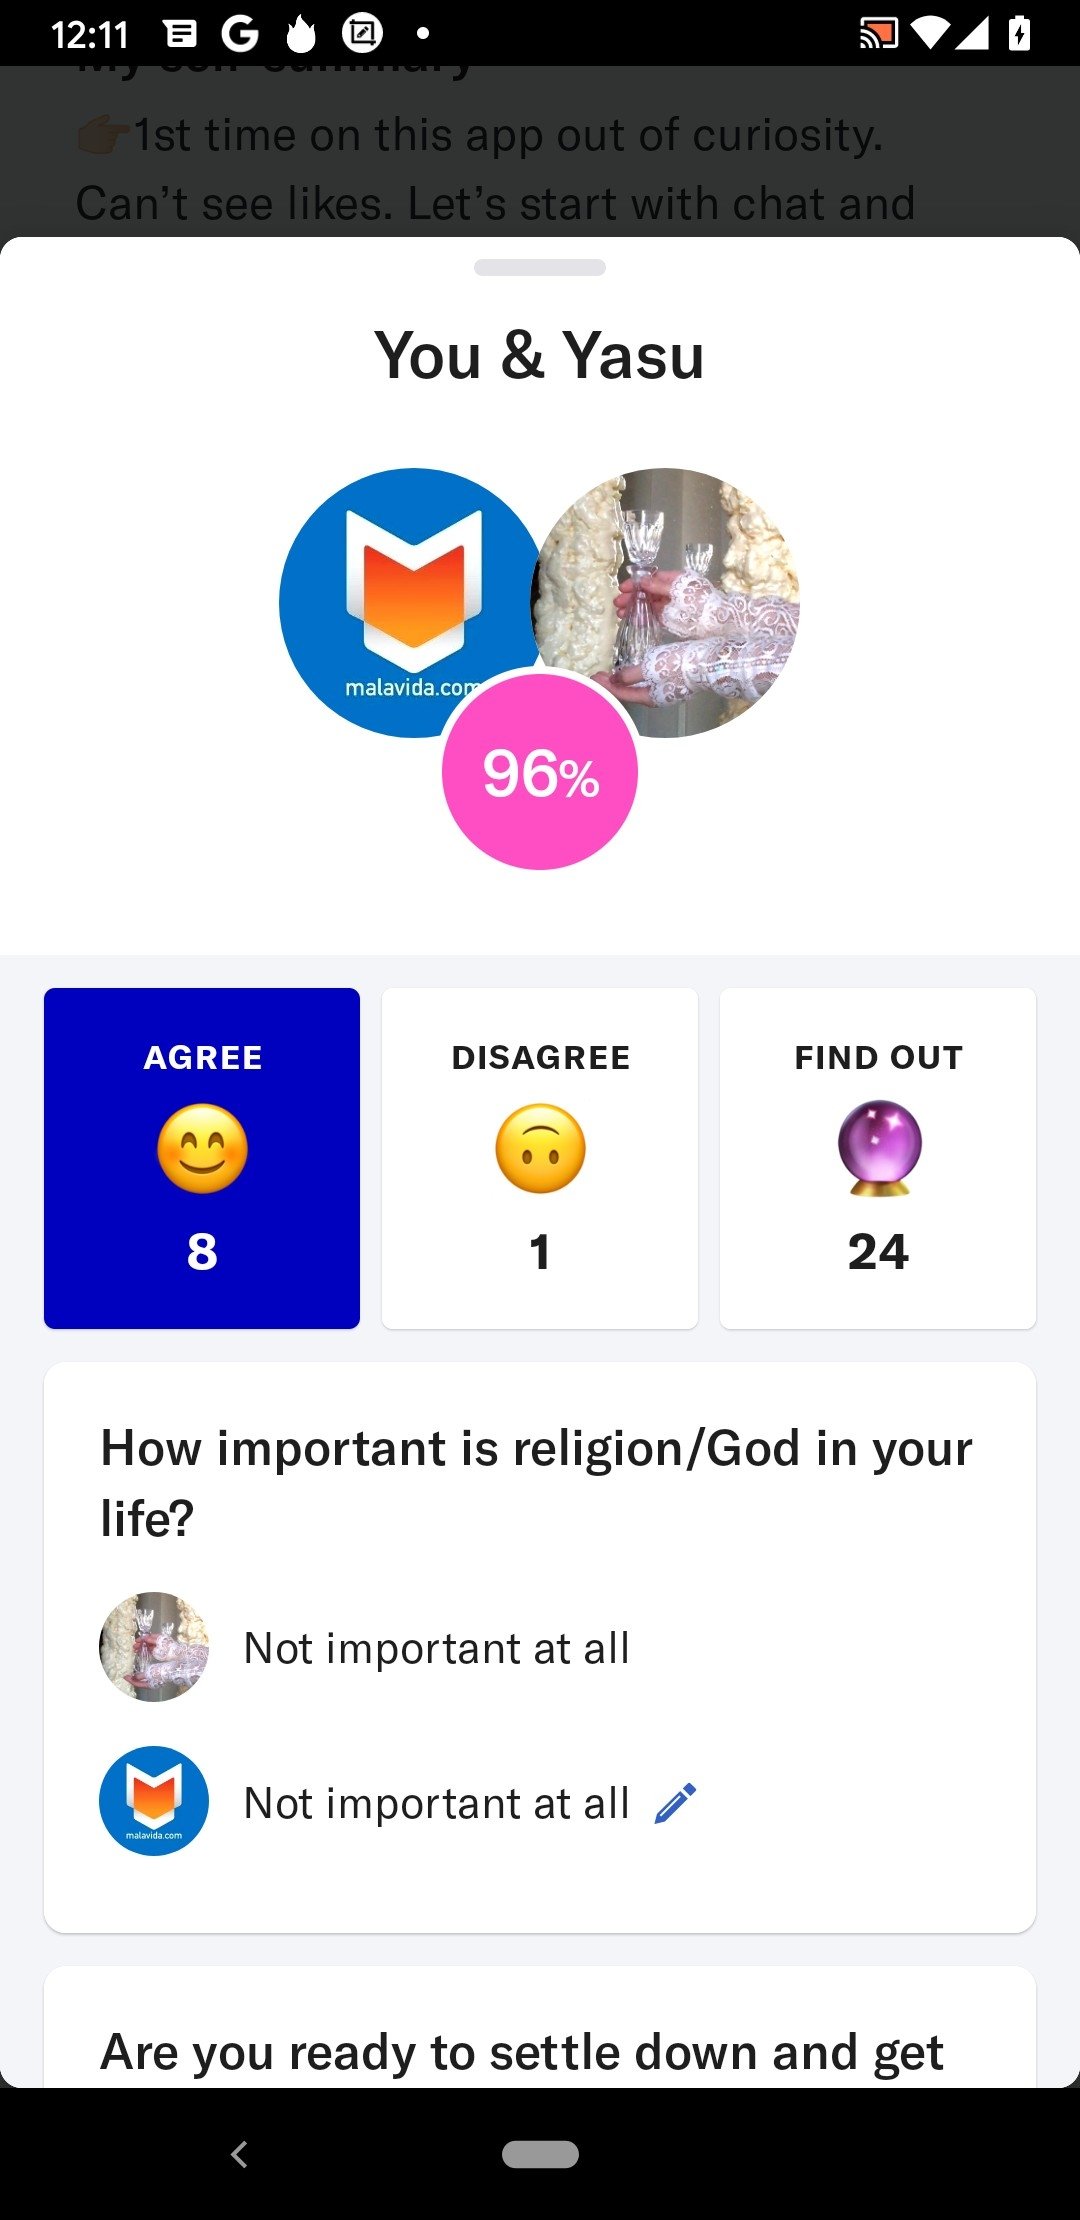 applications de rencontres gratuites comme OkCupid est datant né cessaire avant le mariage